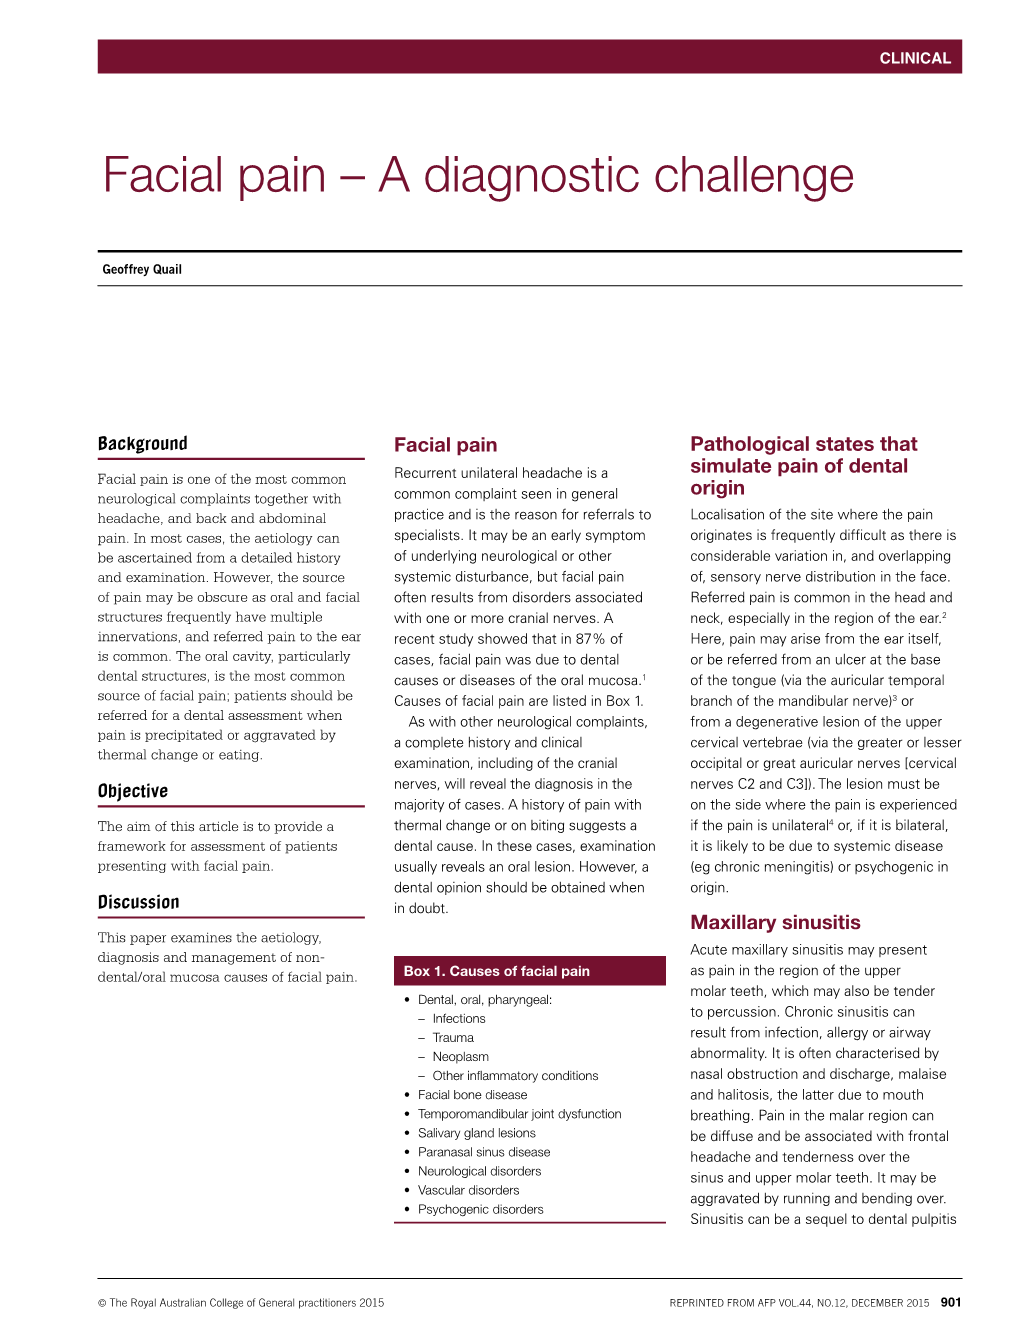 Facial Pain – a Diagnostic Challenge